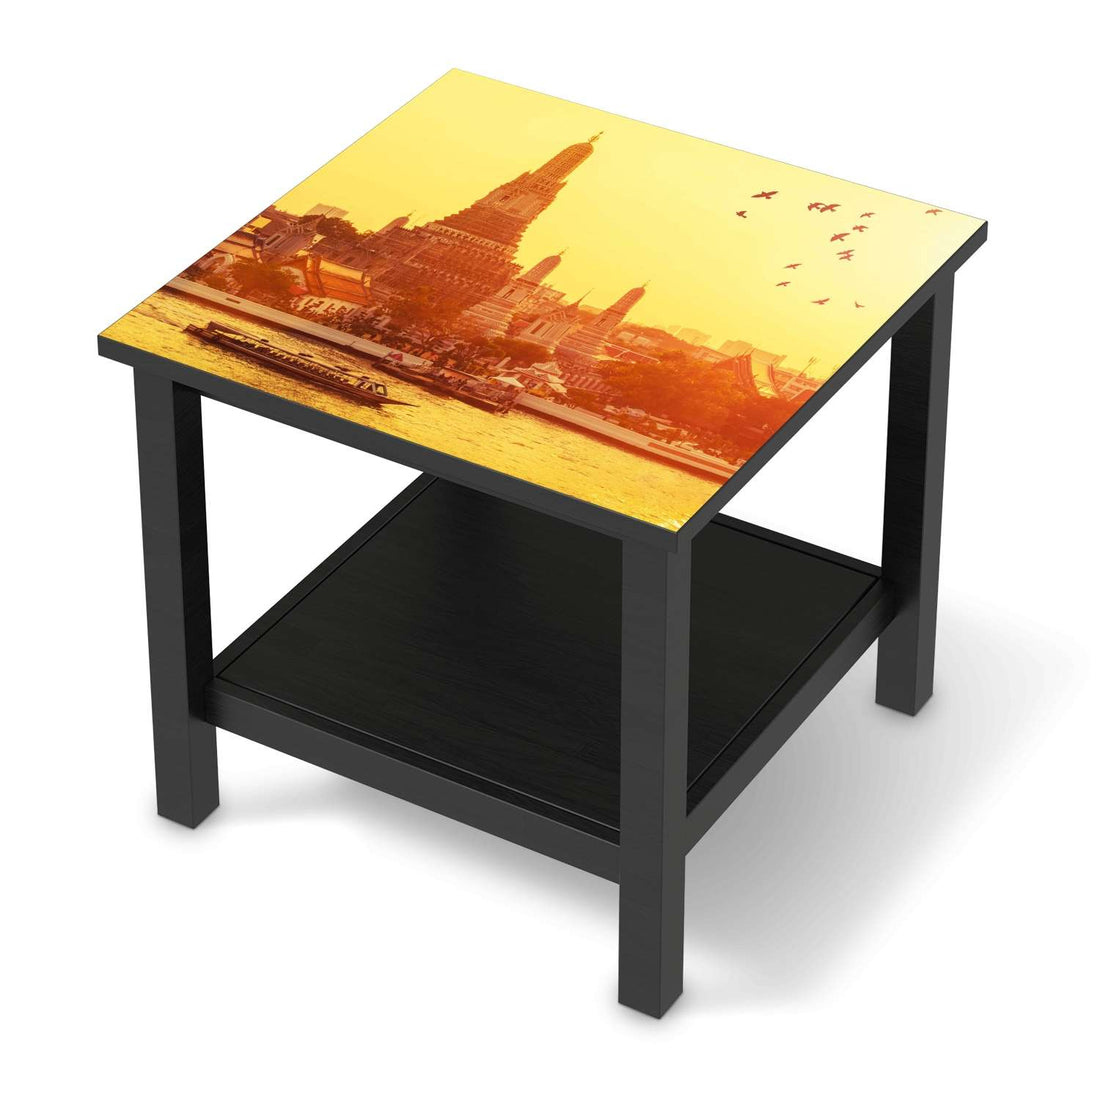 Möbel Klebefolie Bangkok Sunset - IKEA Hemnes Beistelltisch 55x55 cm - schwarz